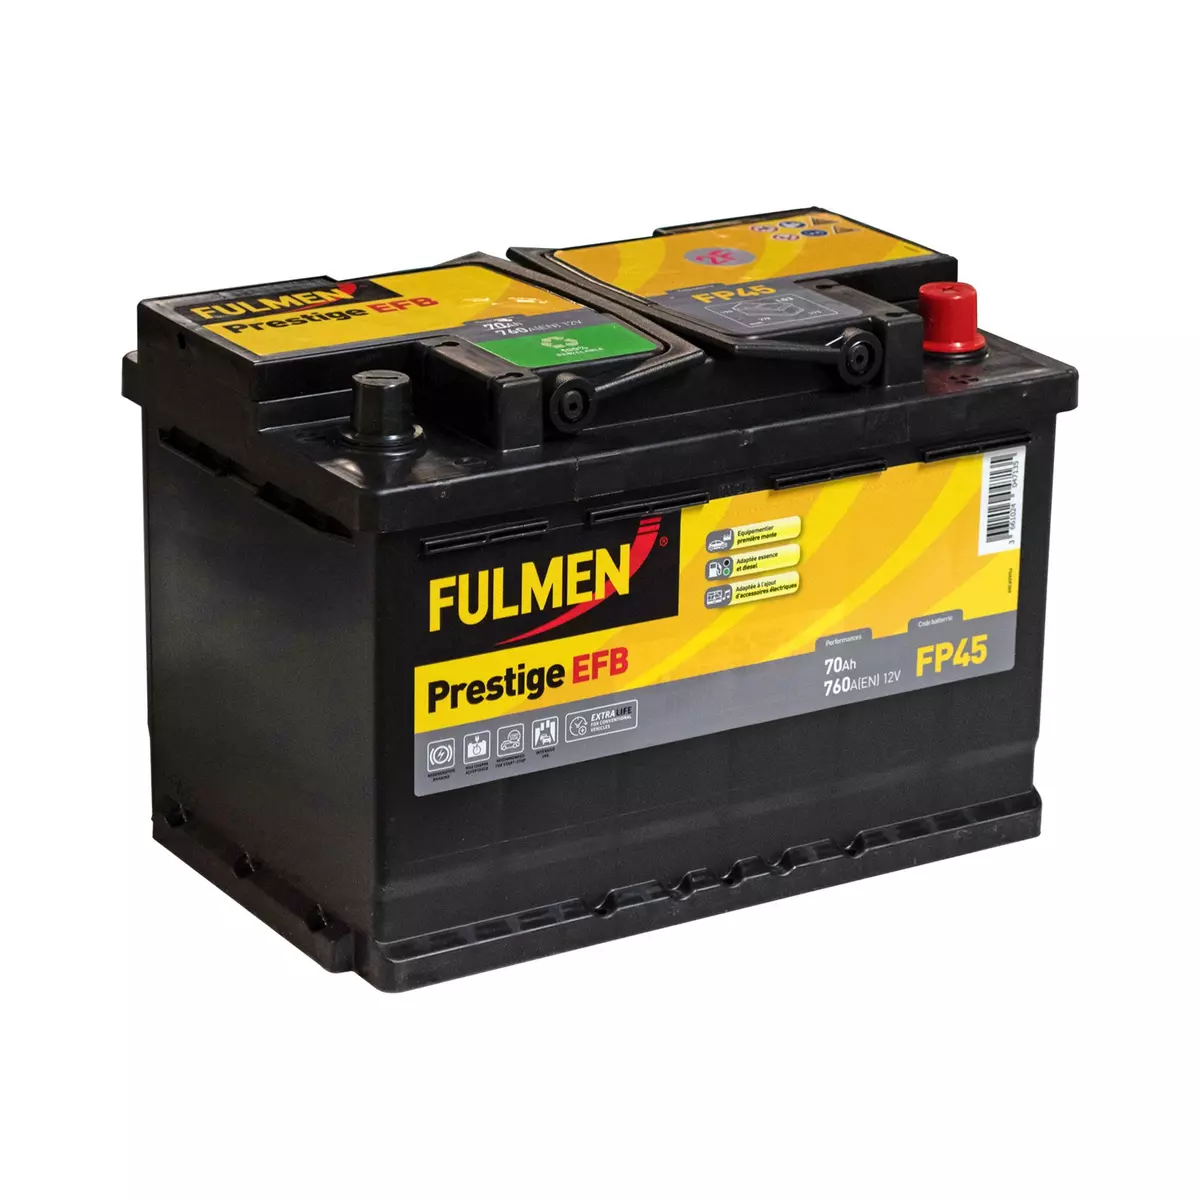 FULMEN Batterie pour voiture 760A FP45 70Ah L3 EFB